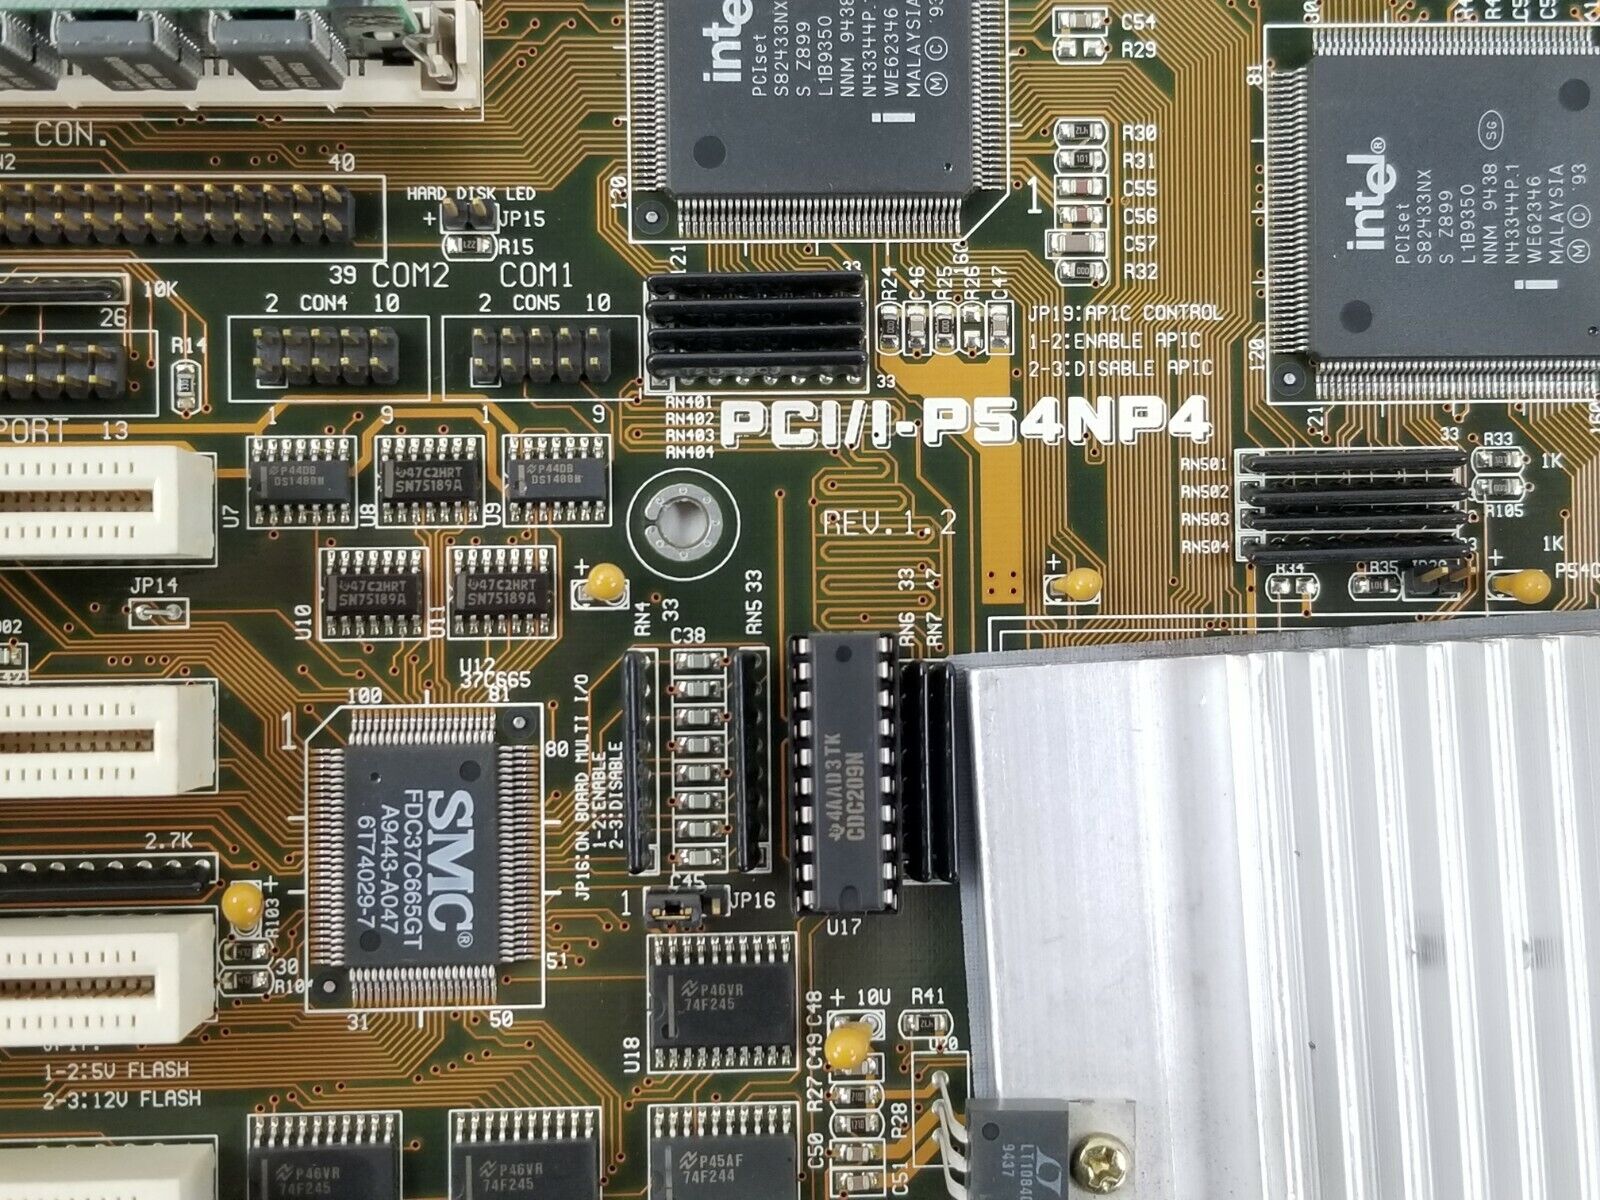 Asus PCI/I-P54NP4 Motherboard Intel Pentium 90MHz 64MB RAM